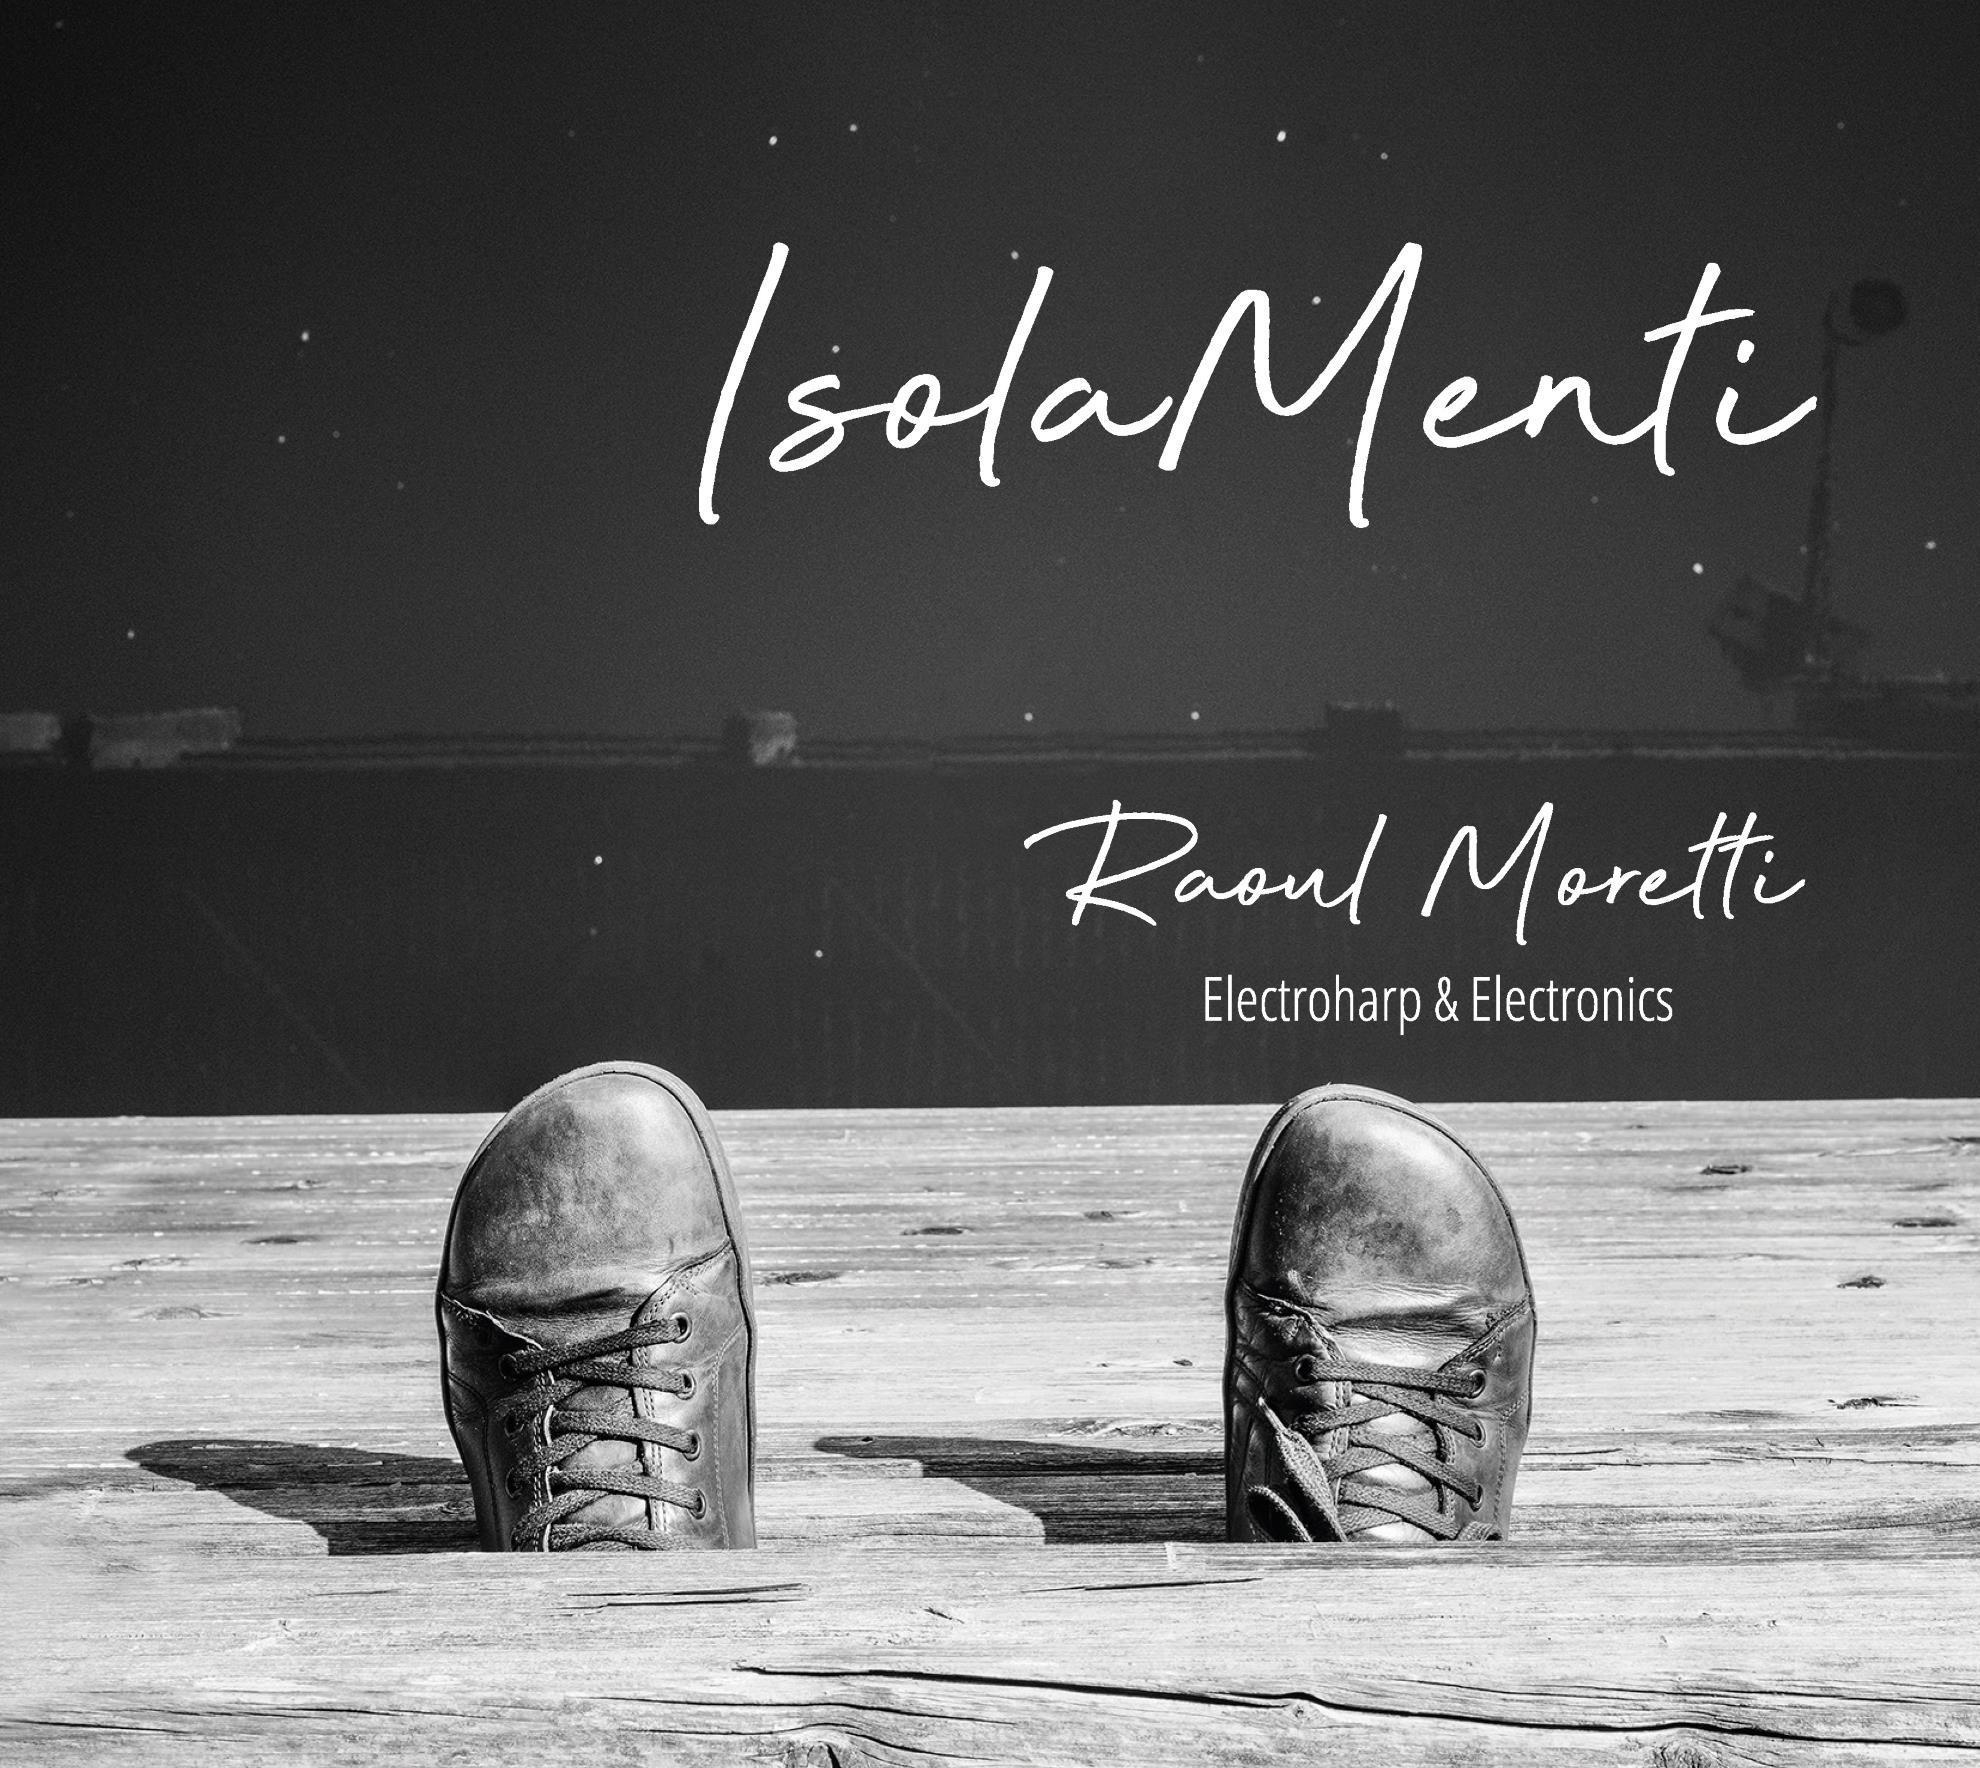 Recensione Raoul Moretti - Isola-Menti